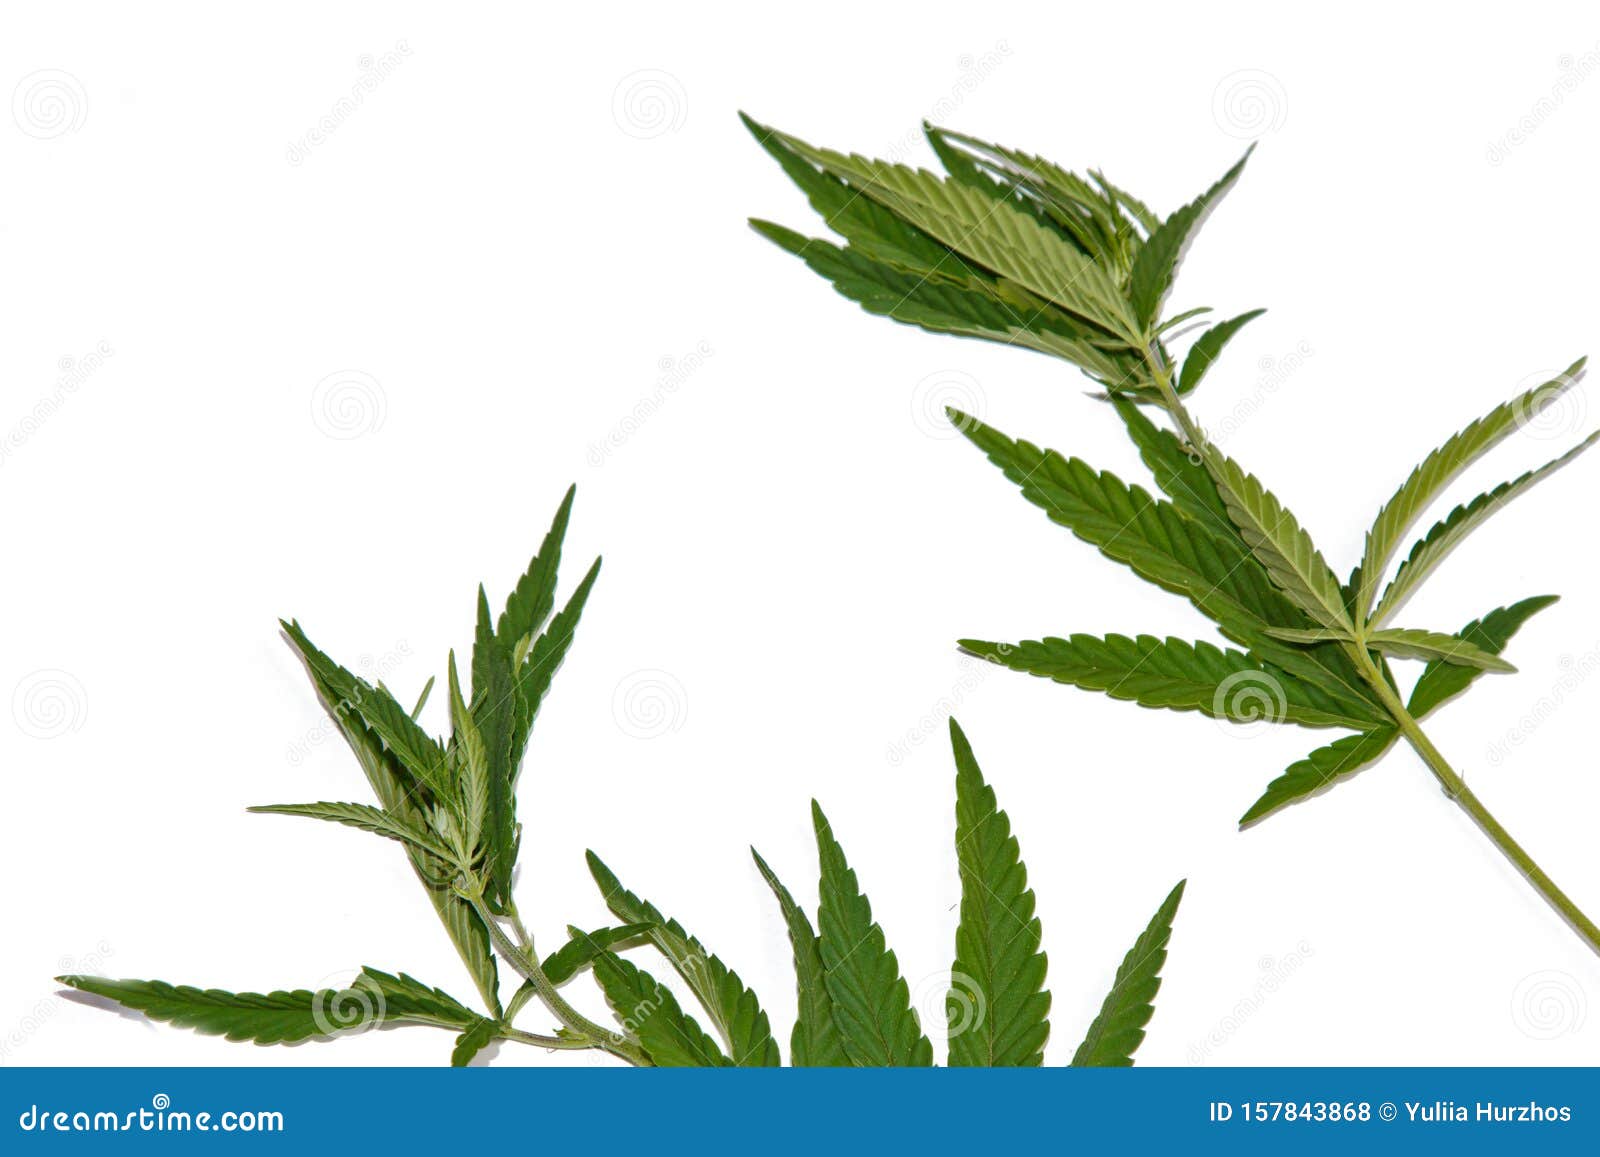 Кустарник листья как у конопли кеды с марихуаной